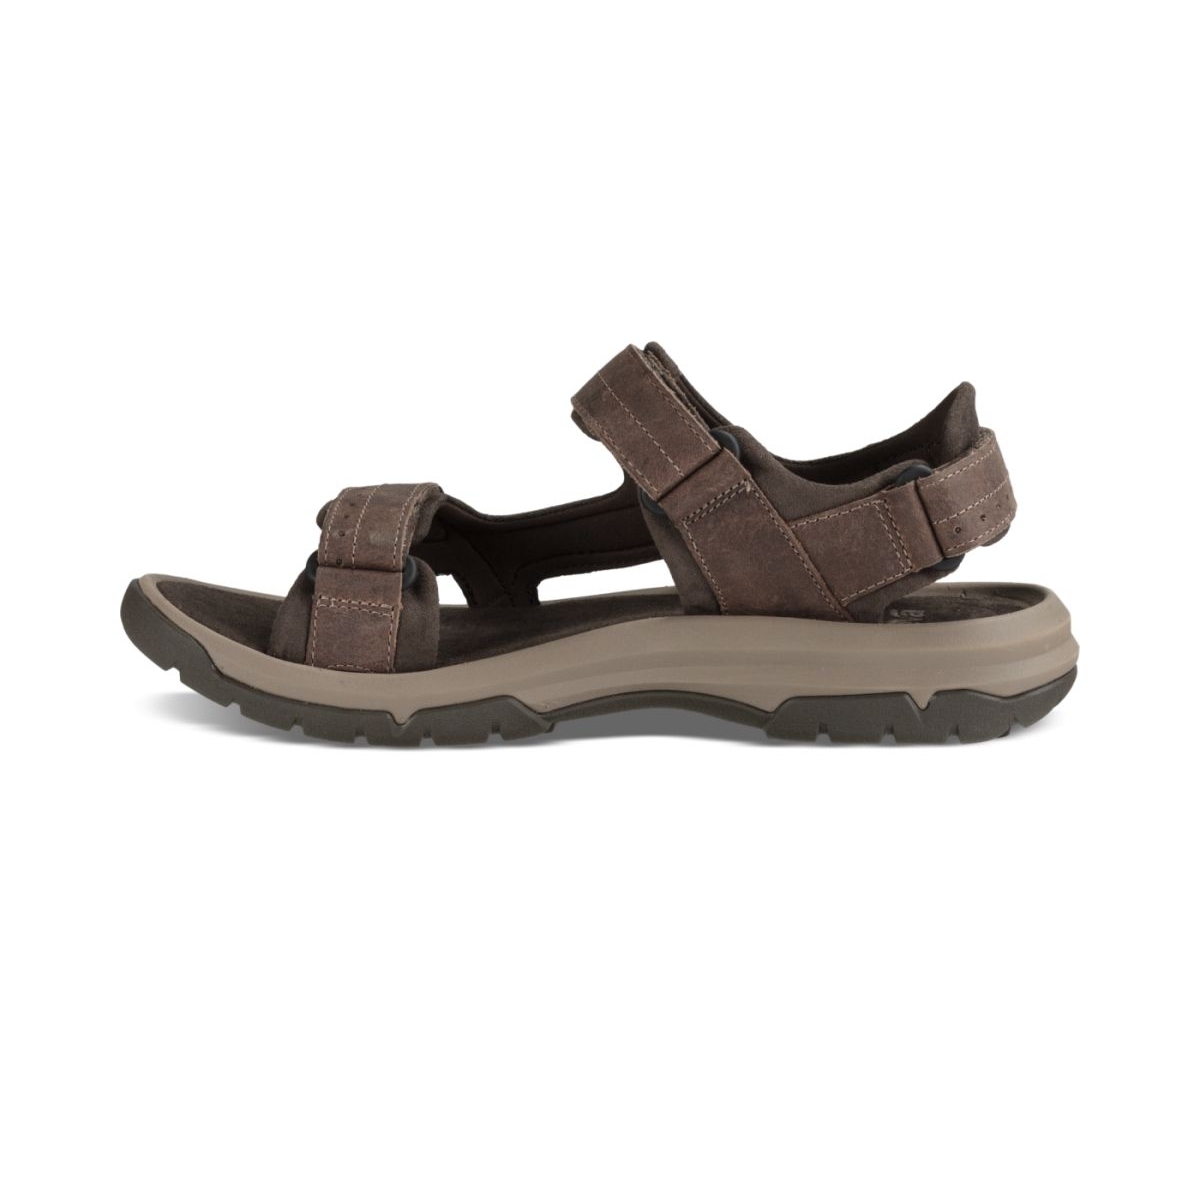 Teva Men's Langdon Sandal Walnut Leather - 1015149-WAL WALNUT - WALNUT, 13-M